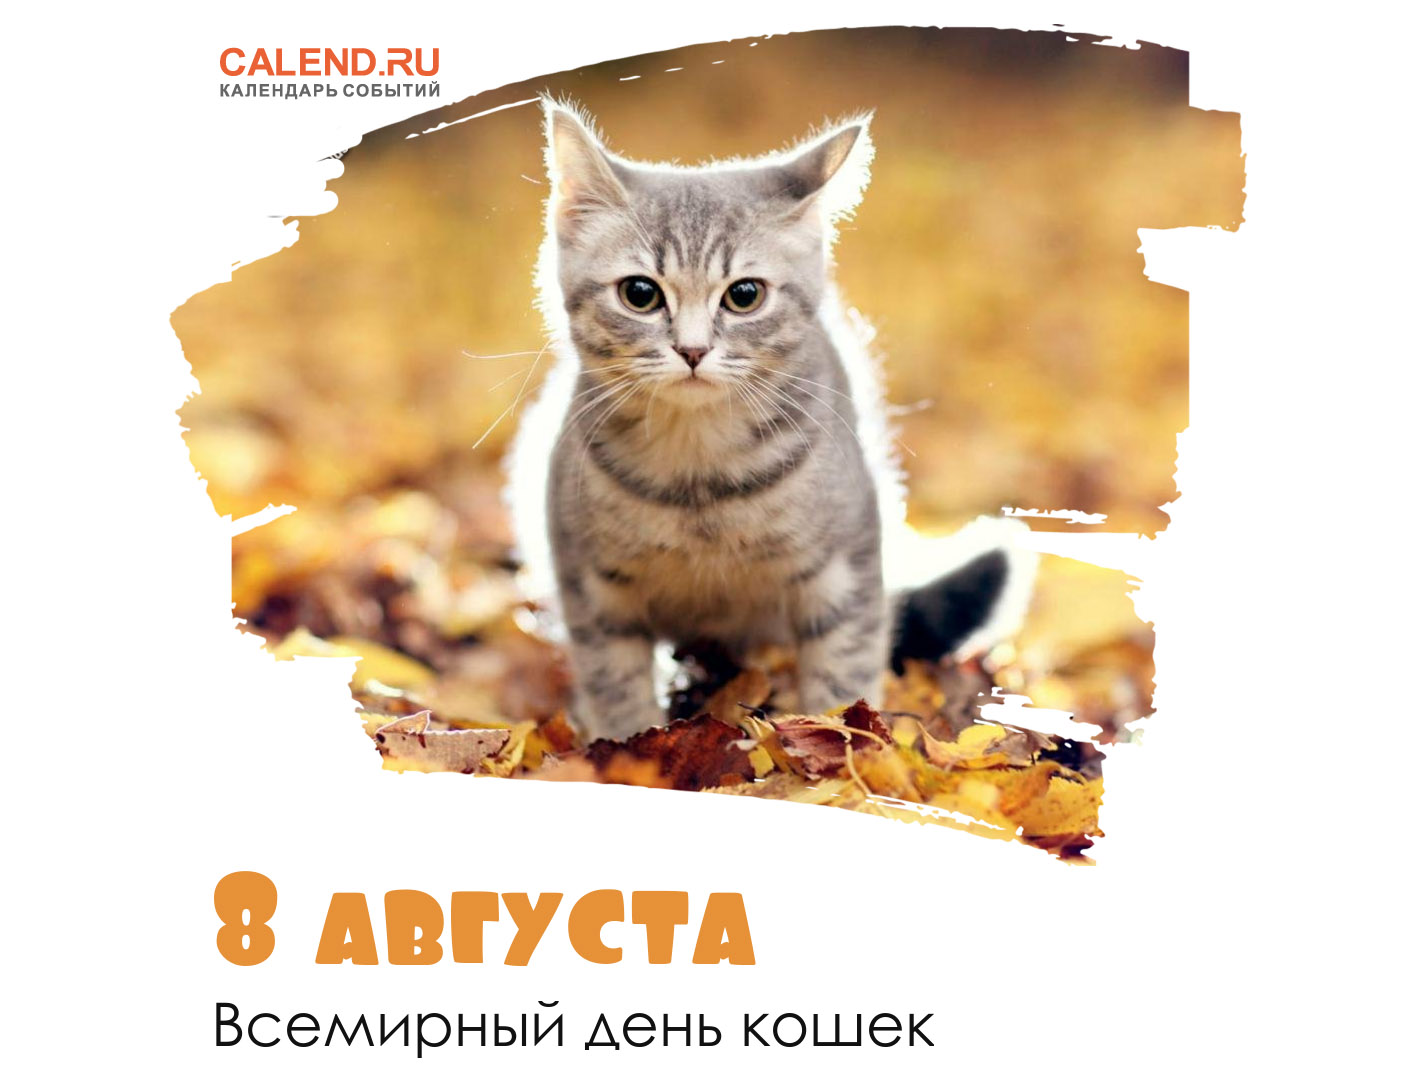 https://www.calend.ru/calendar/wp-content/uploads/08-2-avgusta.jpg